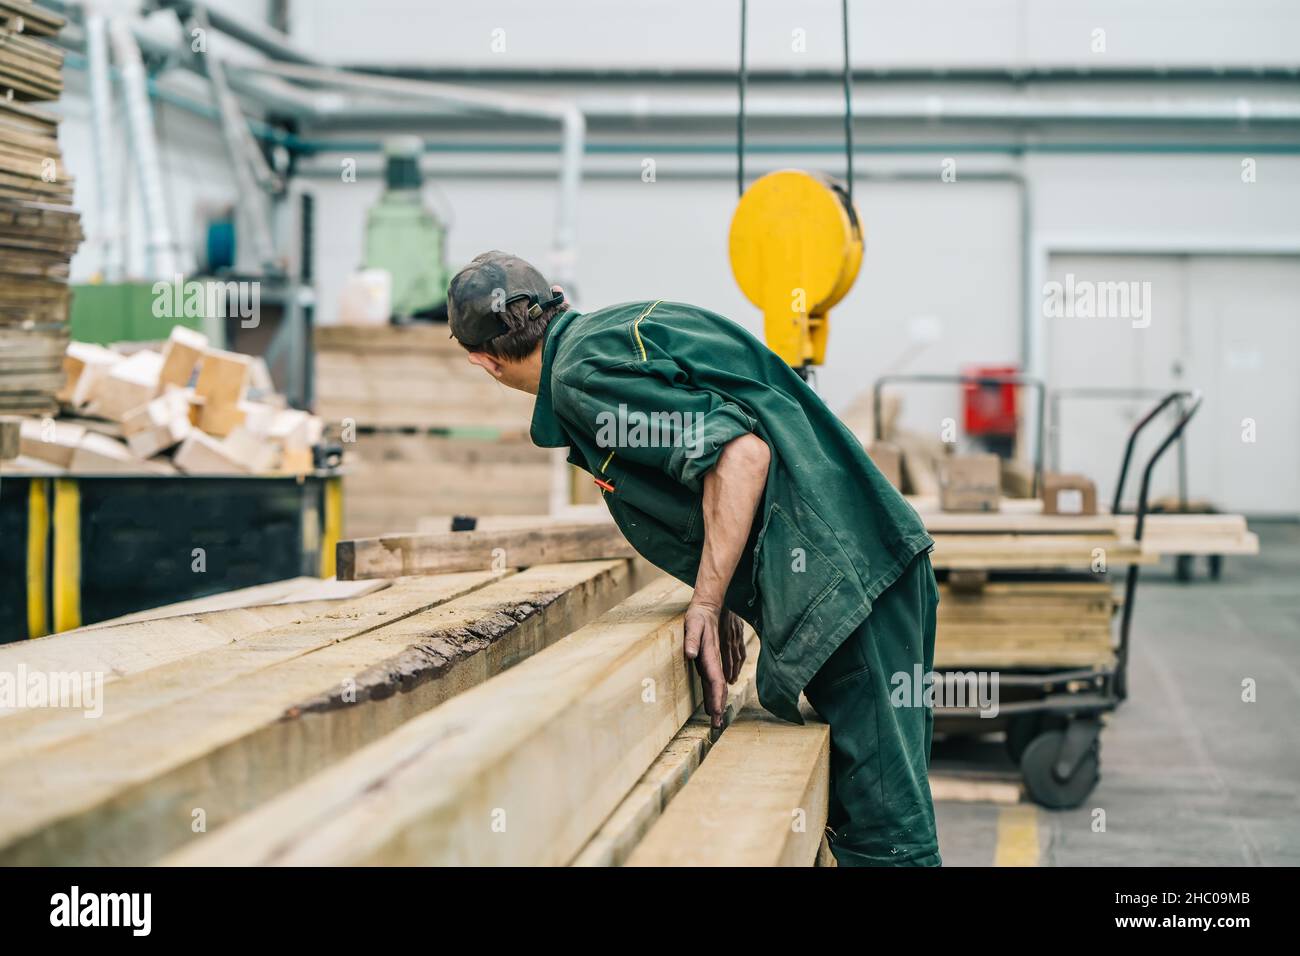 Trabajador de carpintería en fábrica con pila de madera. Foto de stock